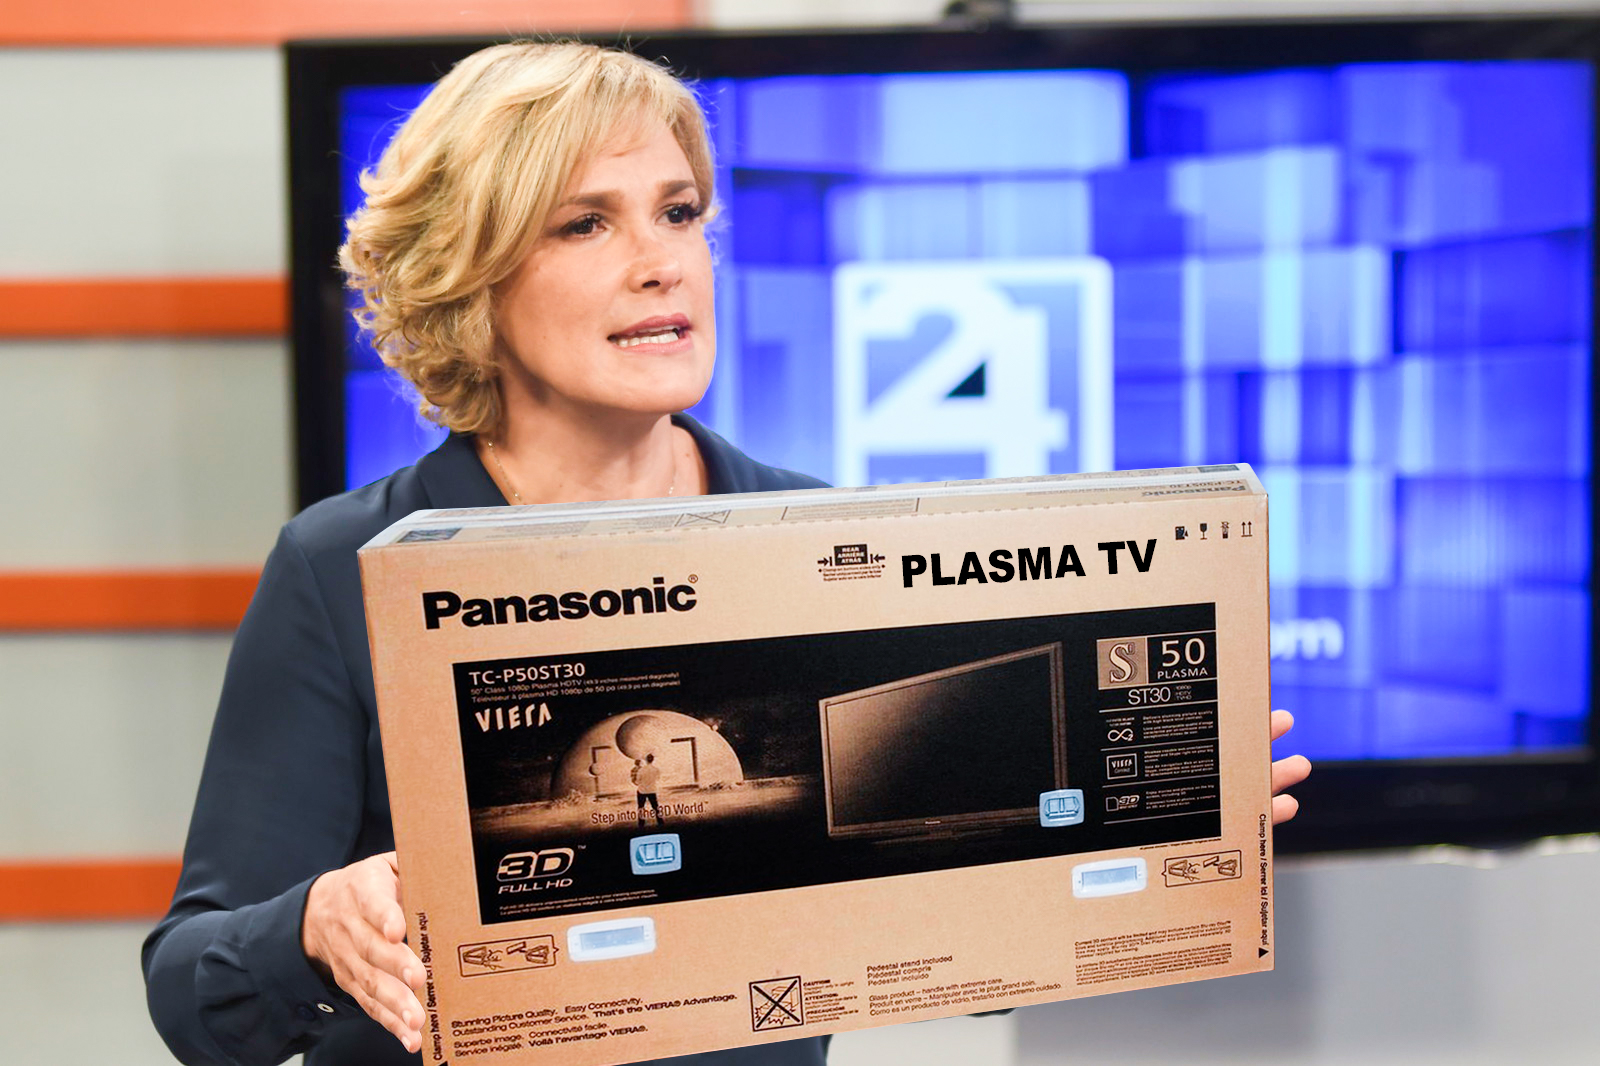 Cynthia donó su plasma y motiva a otros políticos a donar sus televisores